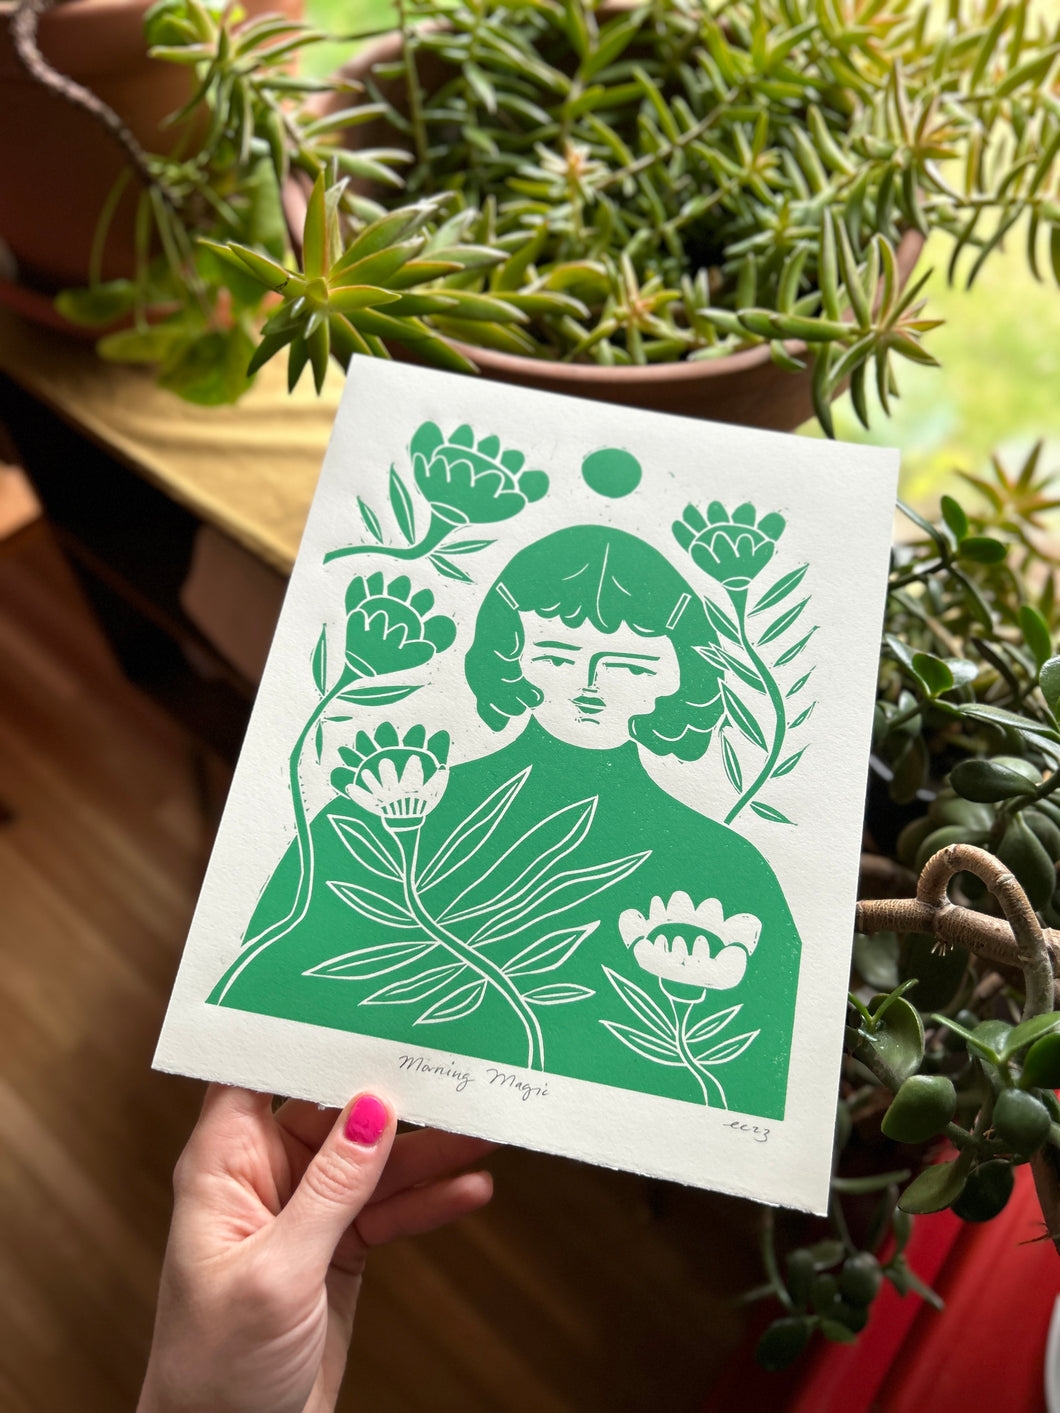 Handprinted Blockprint • “Morning Magic” in Summer Green